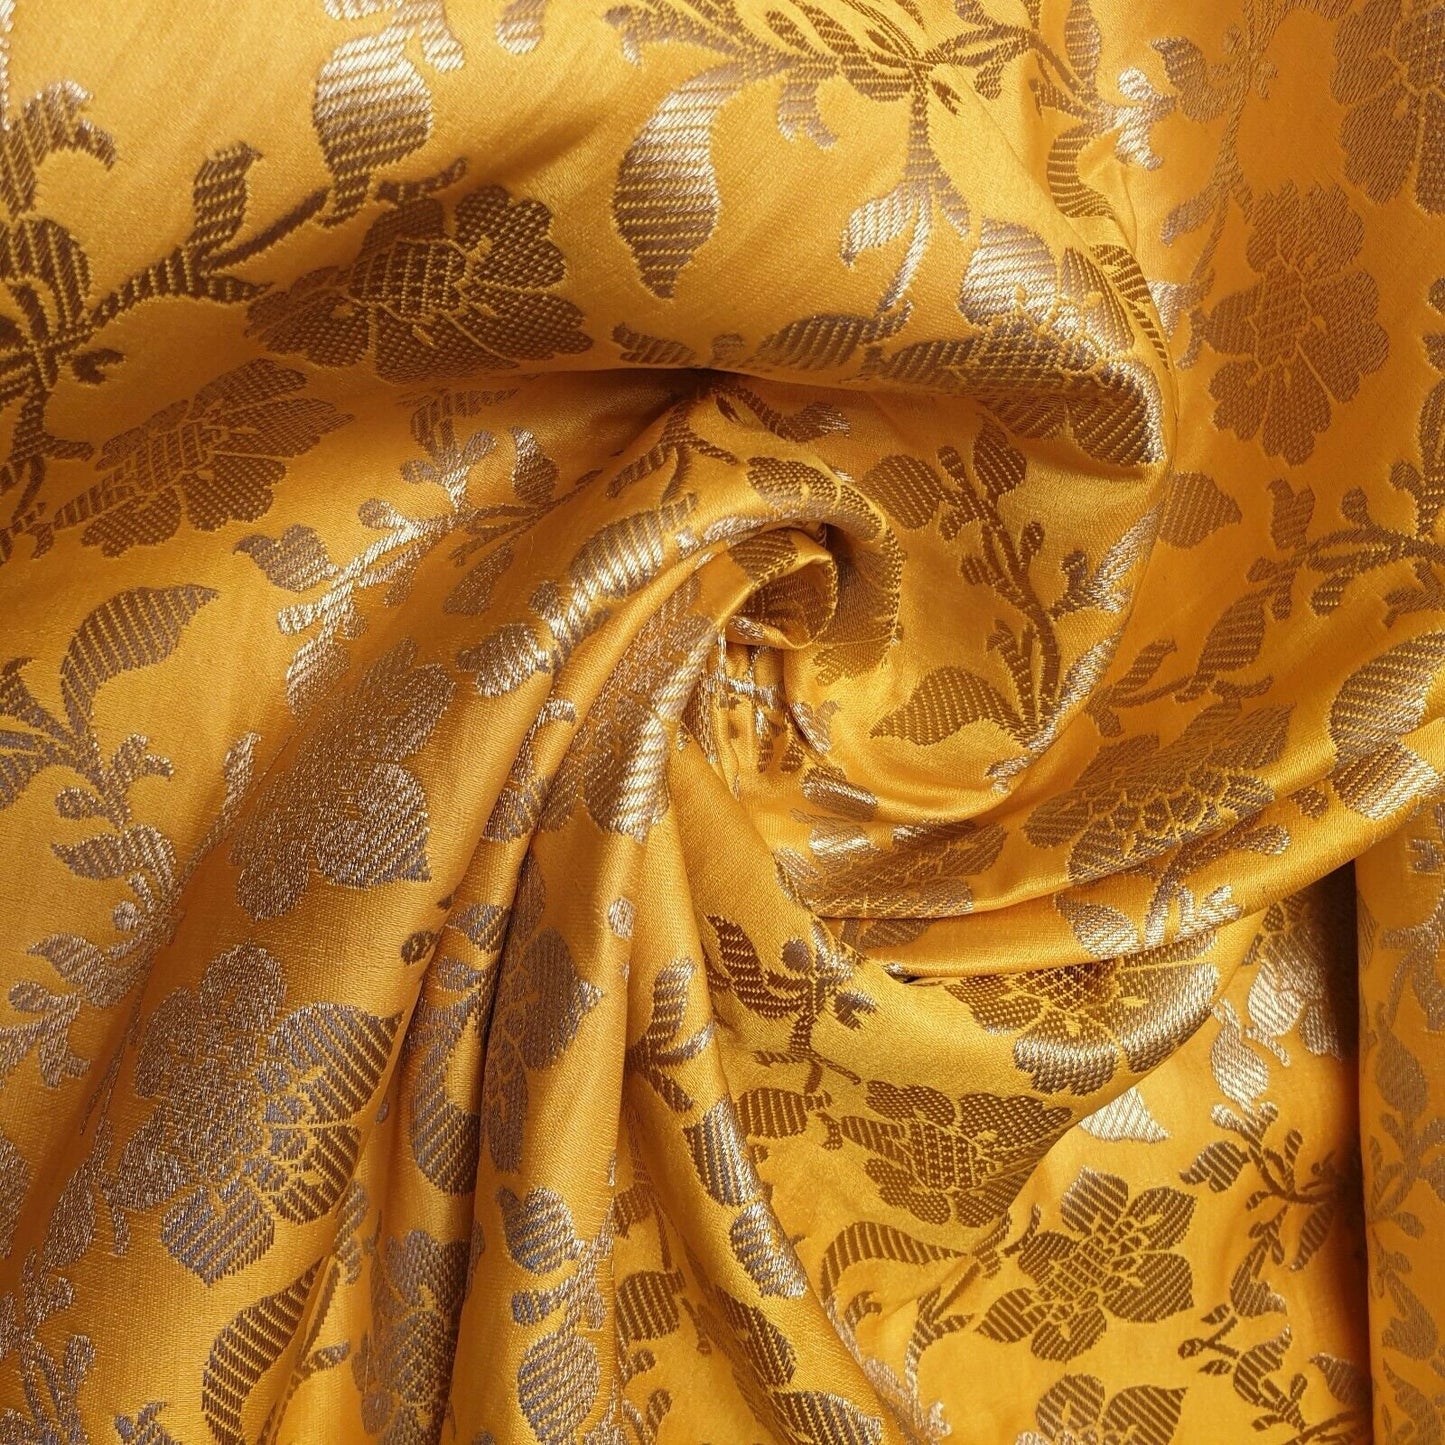 Indian Ornamental Floral Gold Metallic Print Banarasi Brocade Dress Fabric C 44"